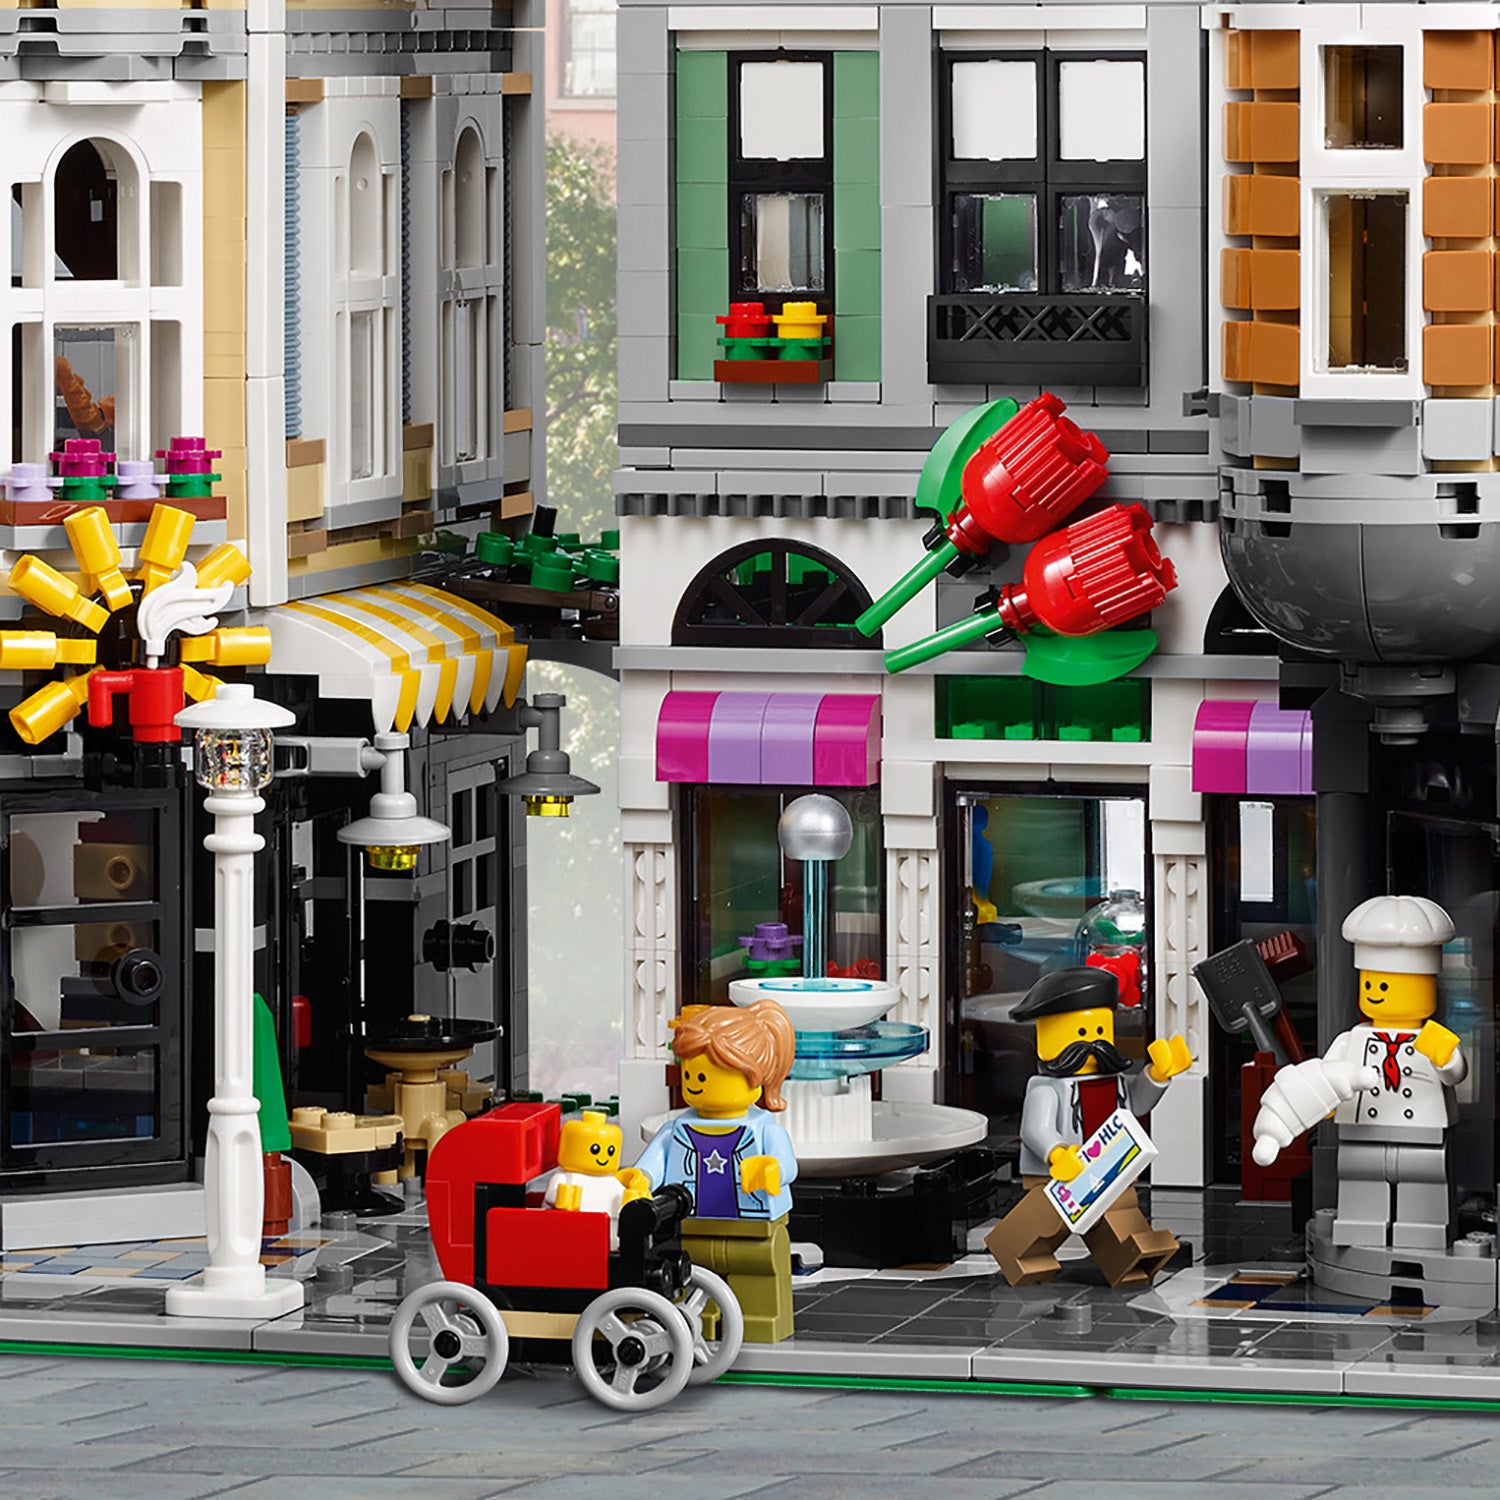 10255 LEGO - Creator  EXPERT - Piazza dell' Assemblea